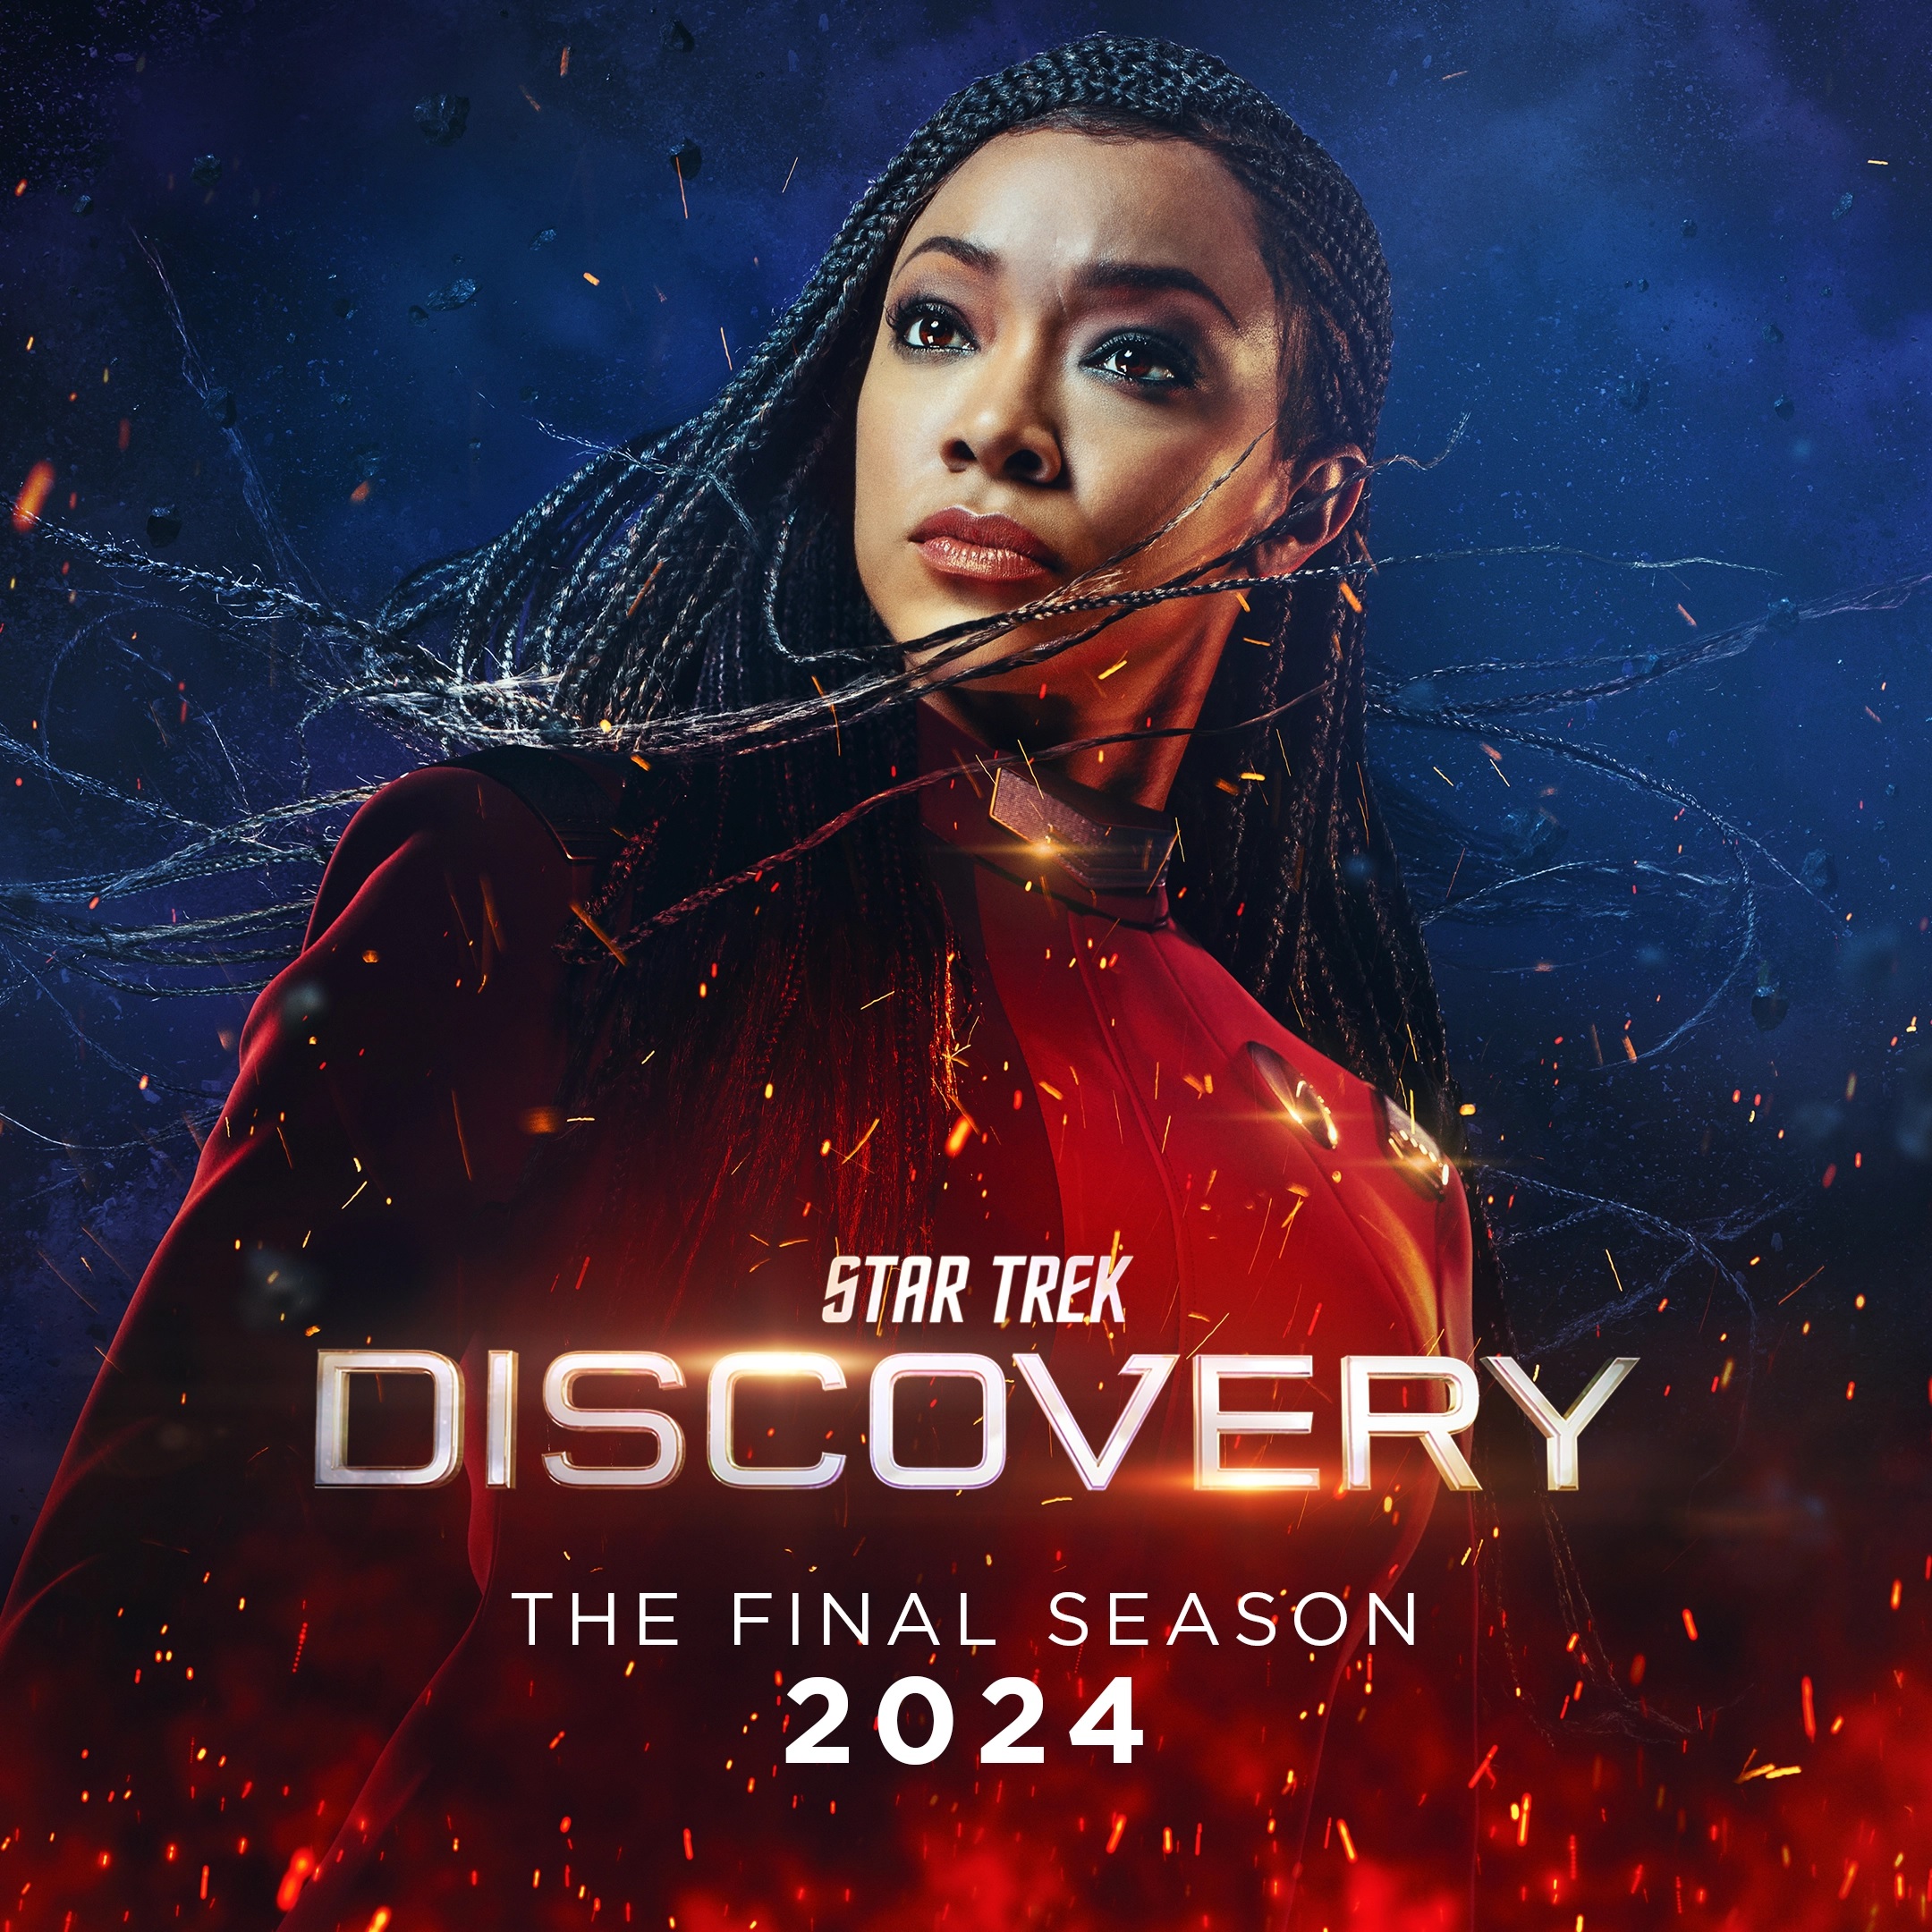 Star Trek Discovery Season 5 promo image